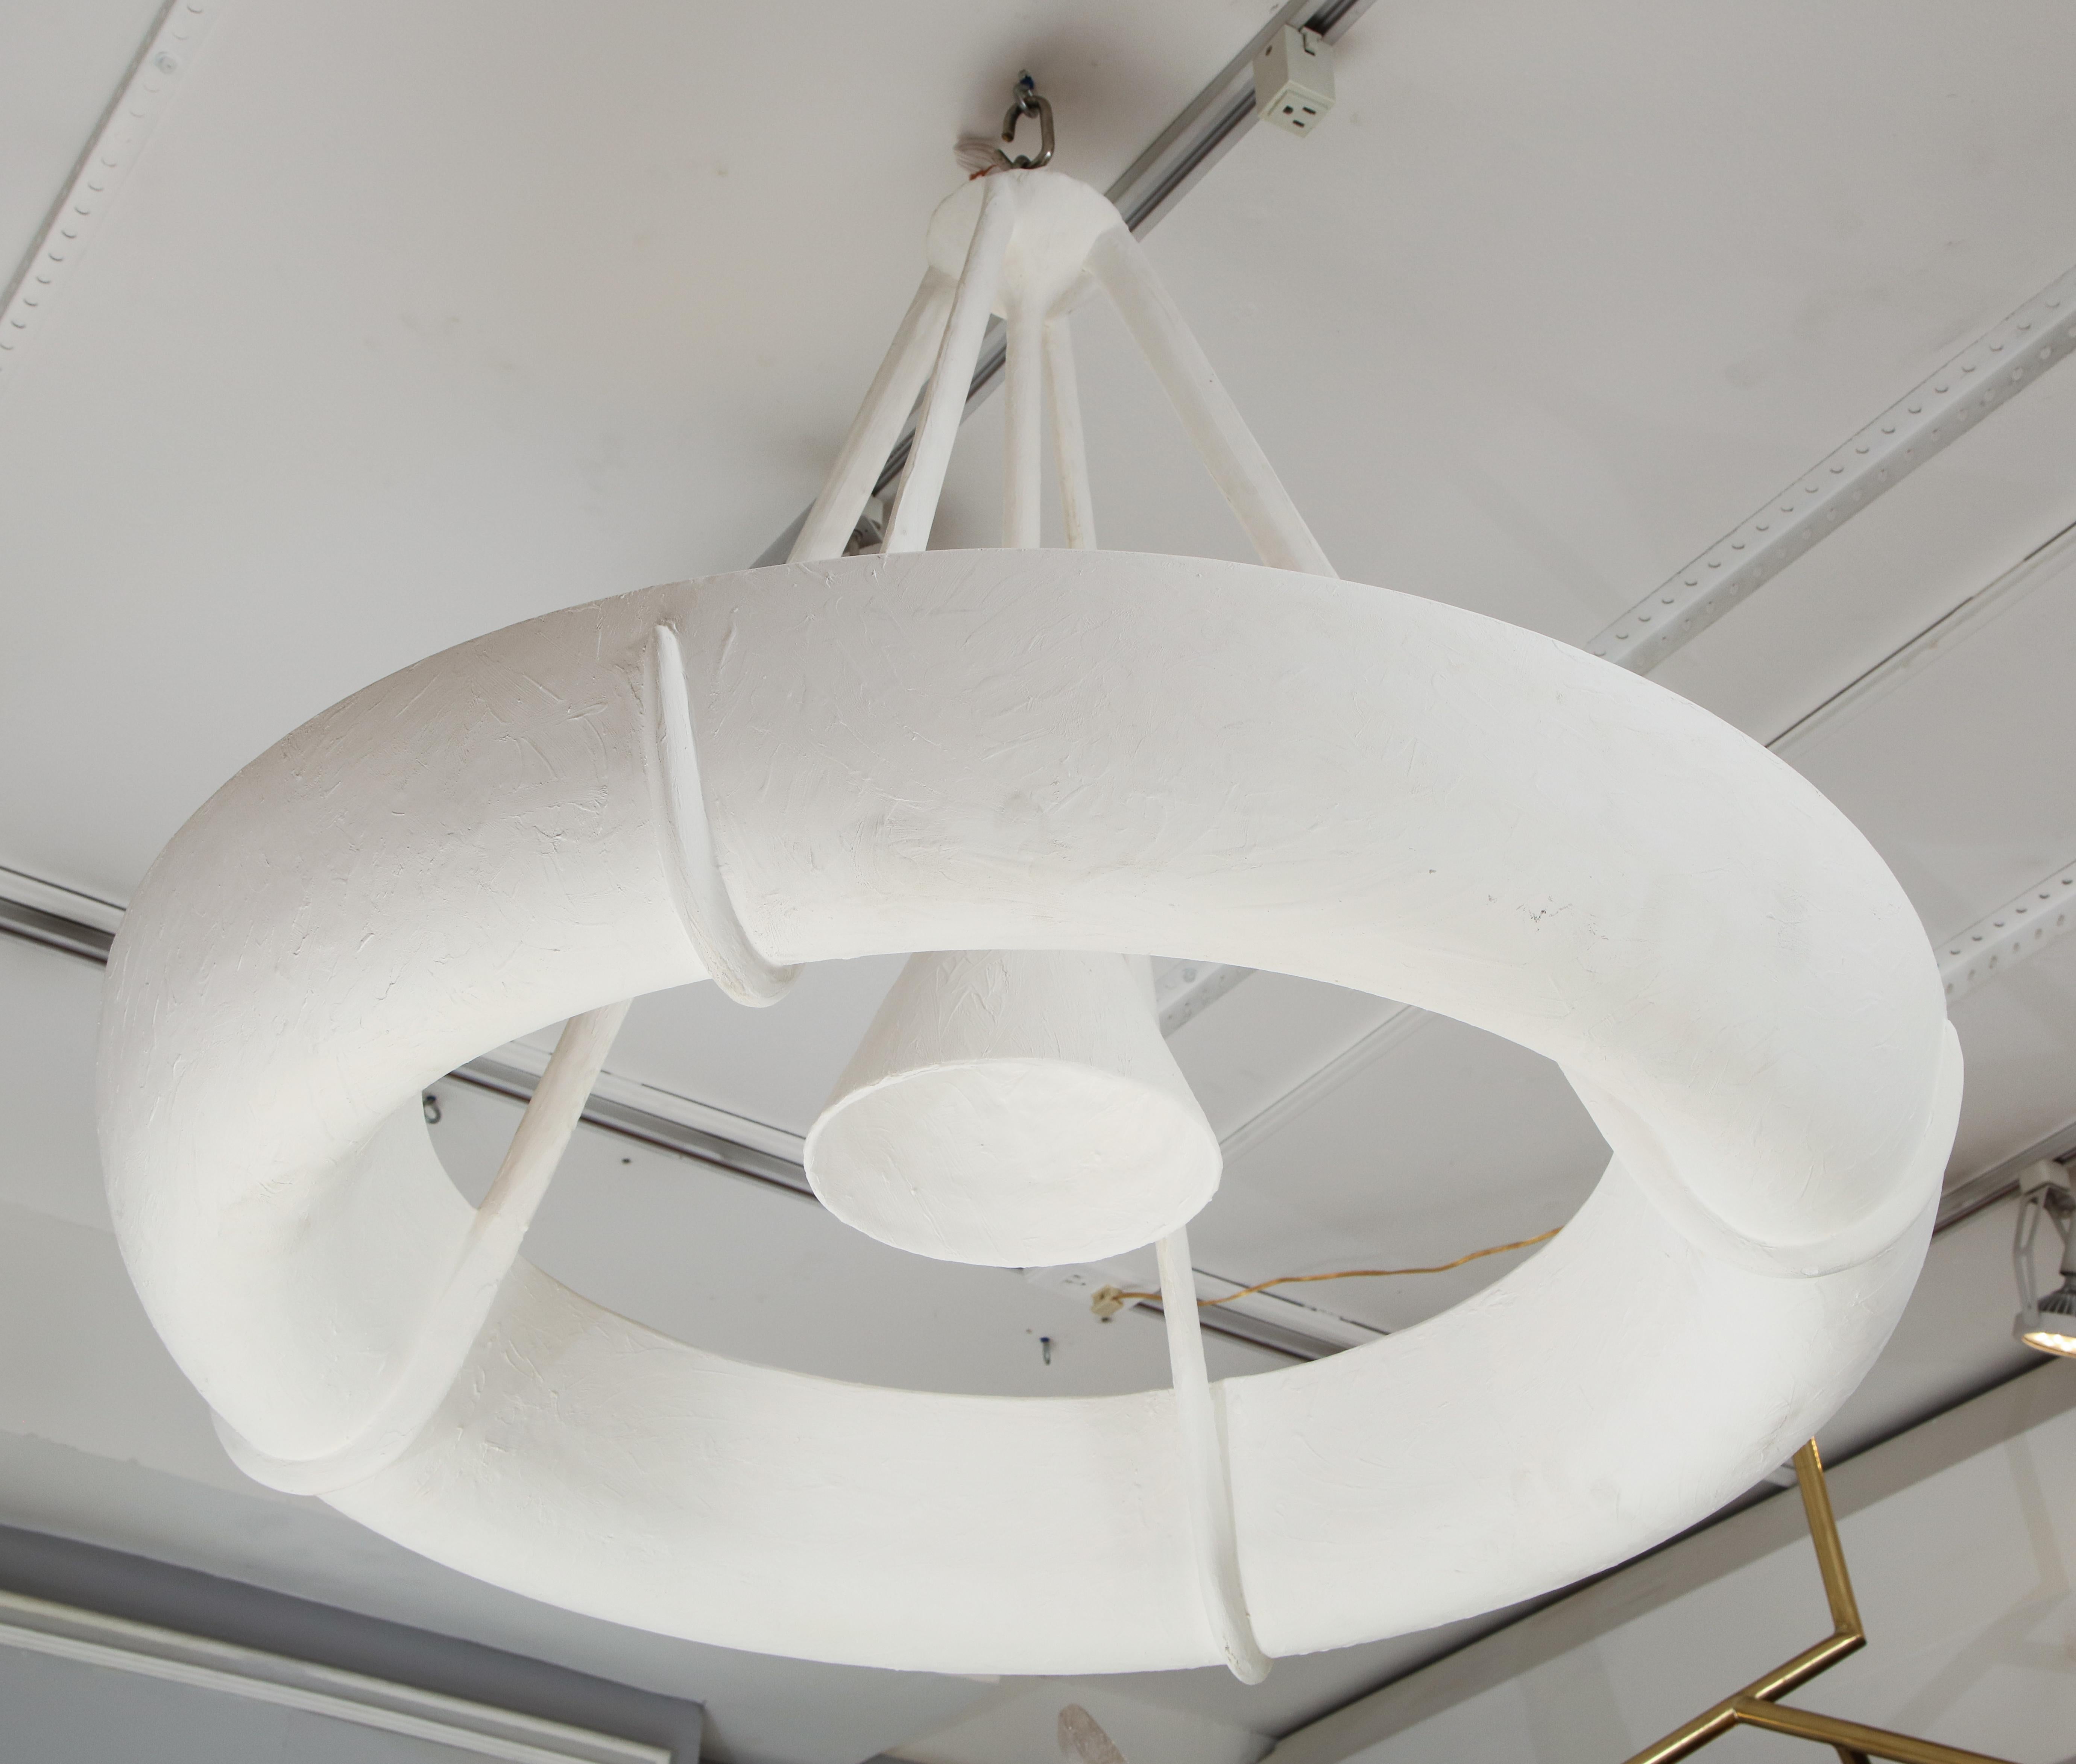 Luminaire sculptural en plâtre sur mesure à la manière de Jean Michel Frank.
Veuillez noter que ce luminaire accepte (1) ampoule Edison de 40 ou 60 watts au centre et (8) ampoules candélabres e-12 de 40 watts chacune à l'intérieur (8) douilles = 320